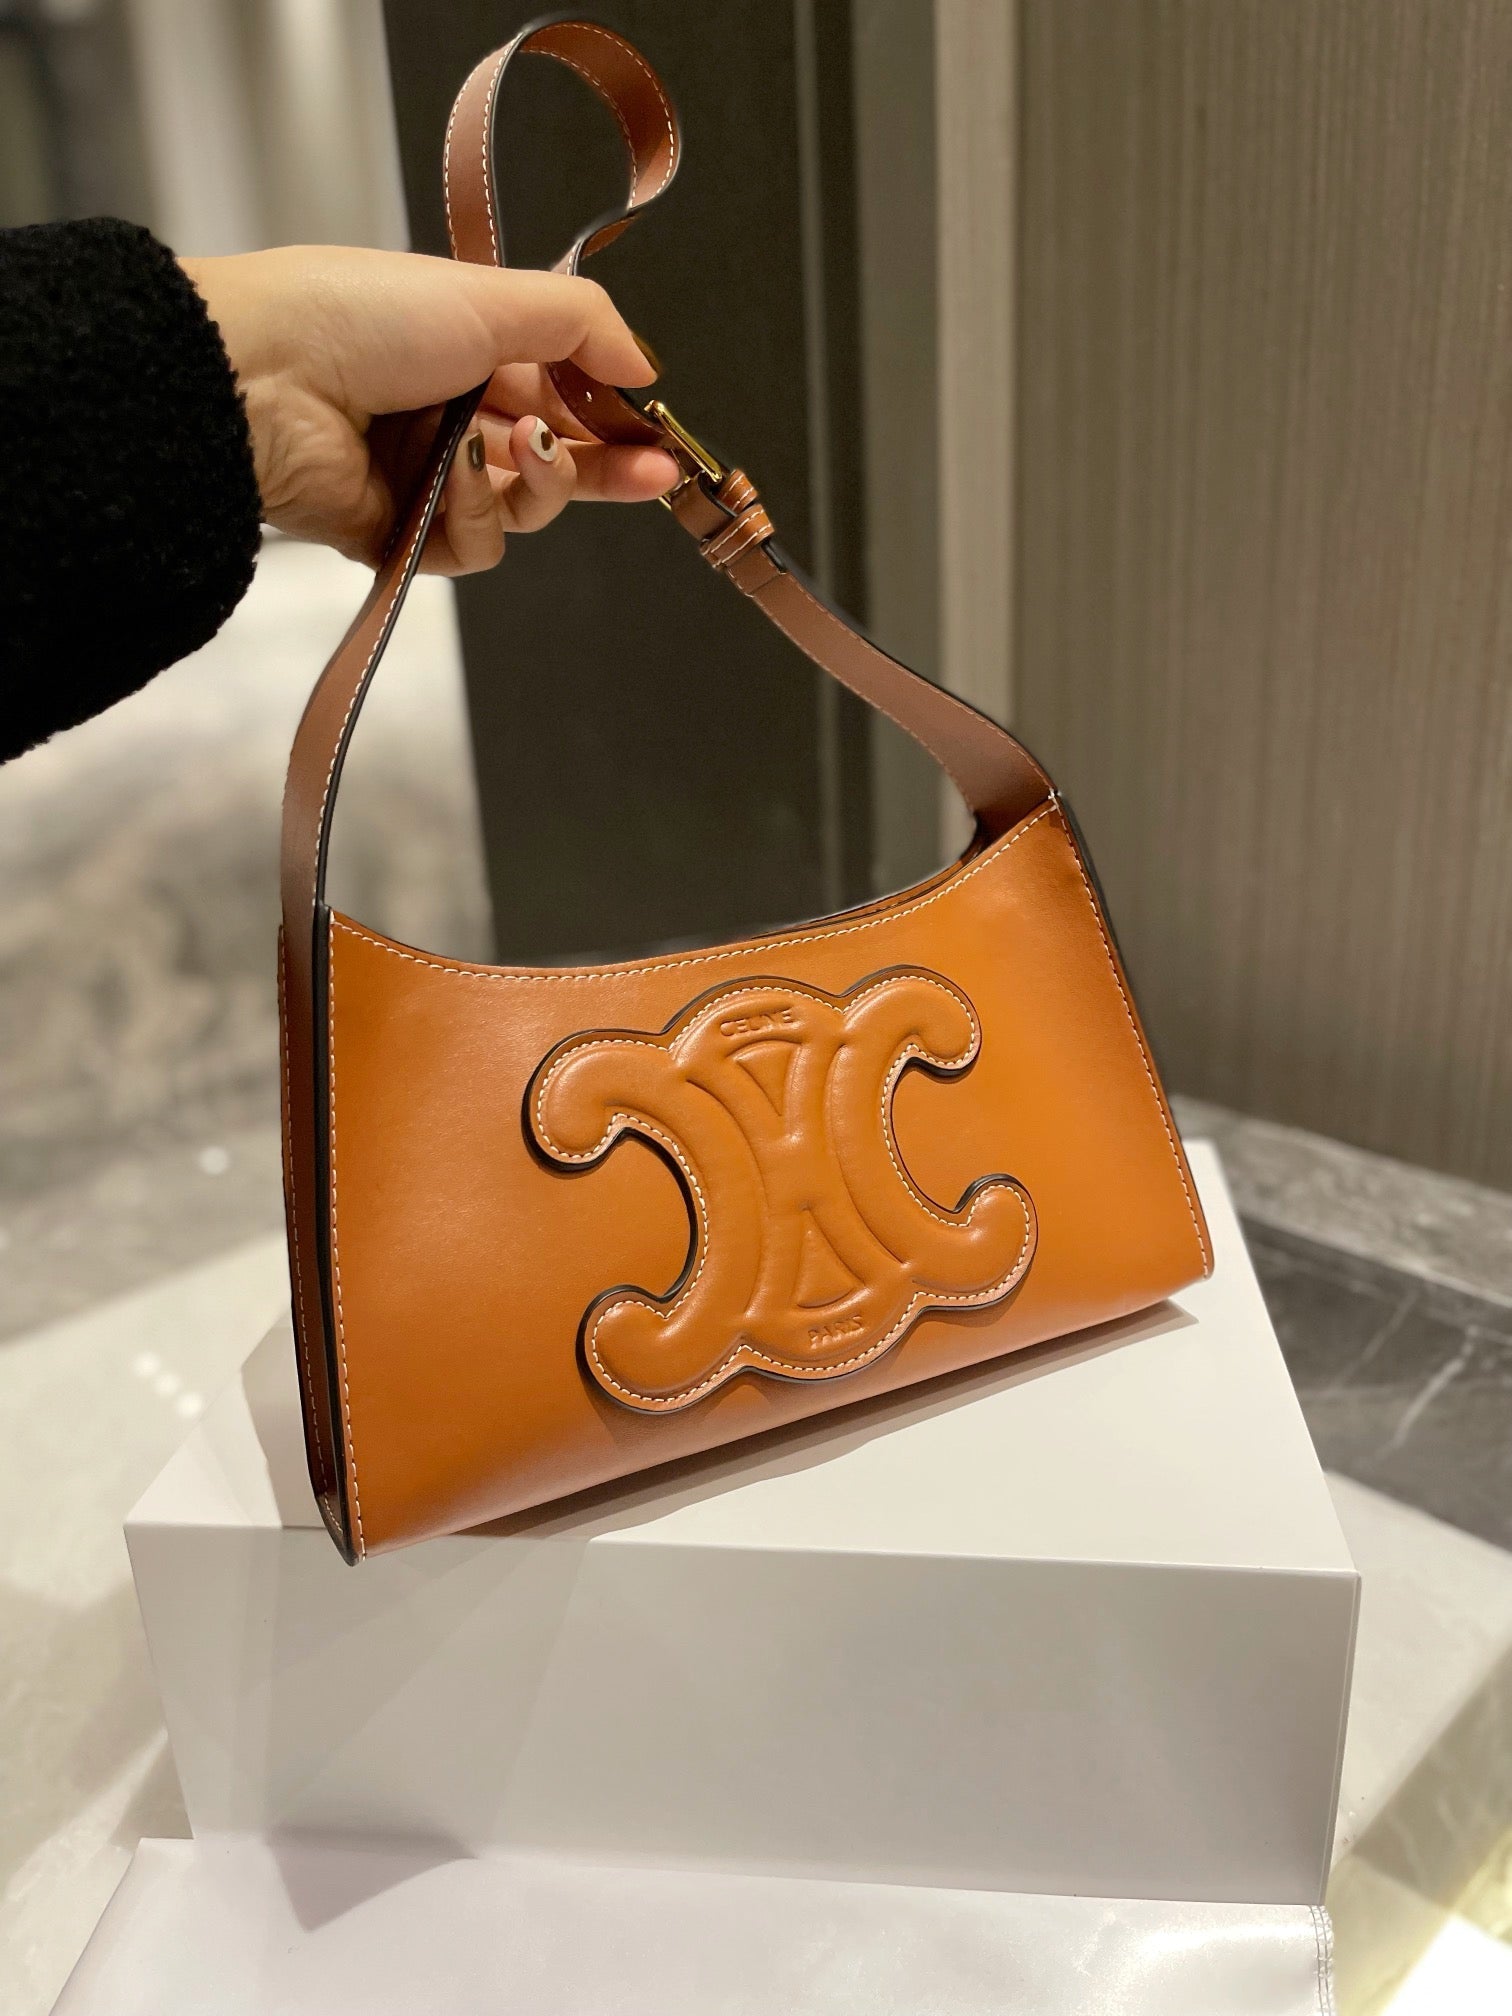 Celine Women's fashion Leather Shoulder Bag Satchel Tote Bag